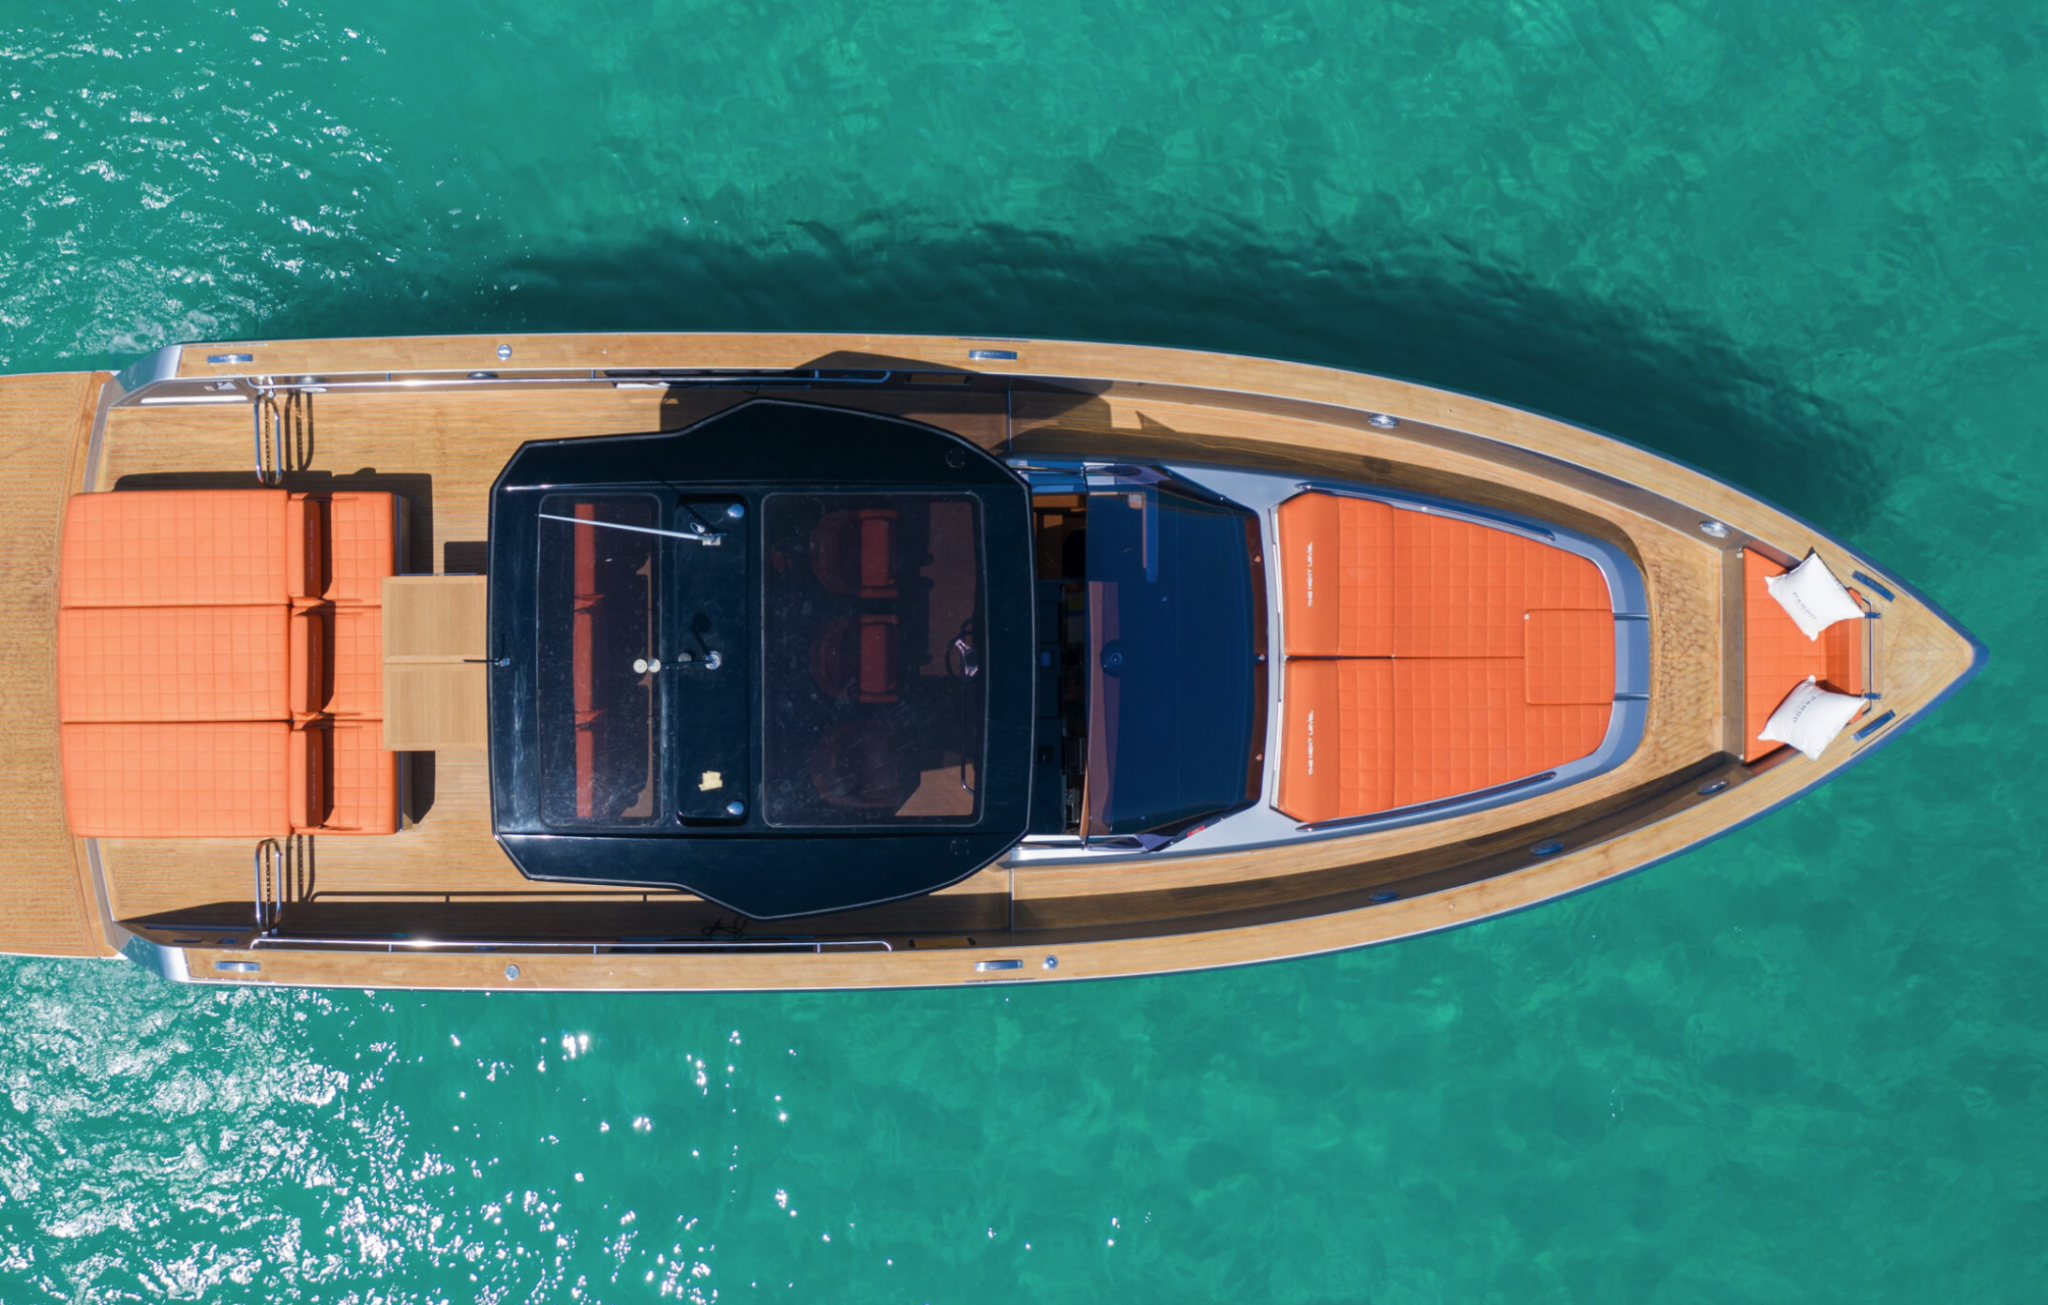 Pardo 43 - Jaupart Yachts - Location de yachts à Villefranche-sur-Mer, Cannes, Monaco